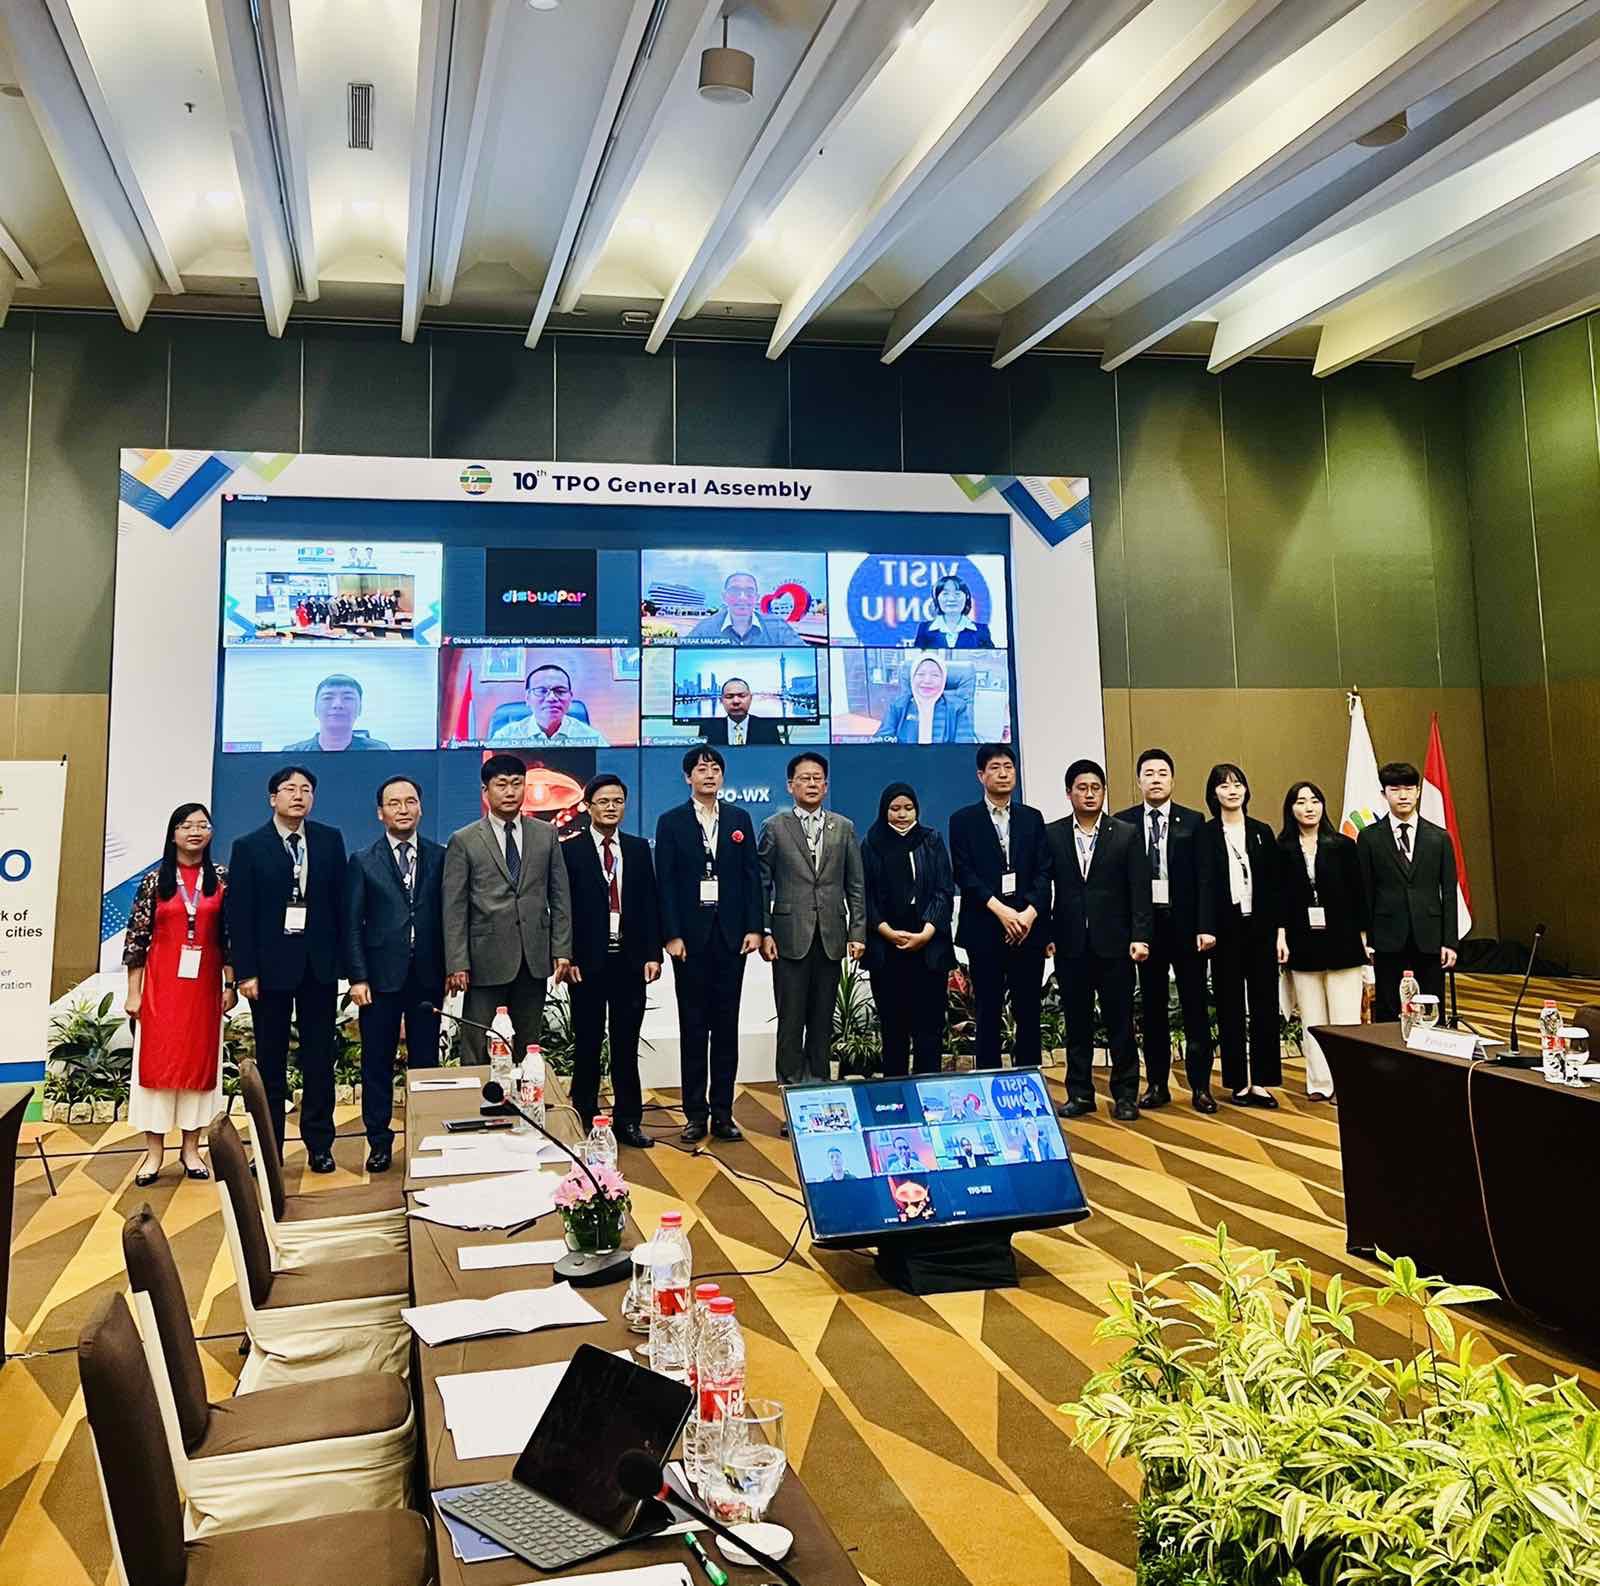 Thành phố Hồ Chí Minh tham gia Chương trình họp Đại hội đồng lần thứ 10 của Tổ chức Xúc tiến Du lịch các Thành phố Châu Á – Thái Bình Dương tại Indonesia